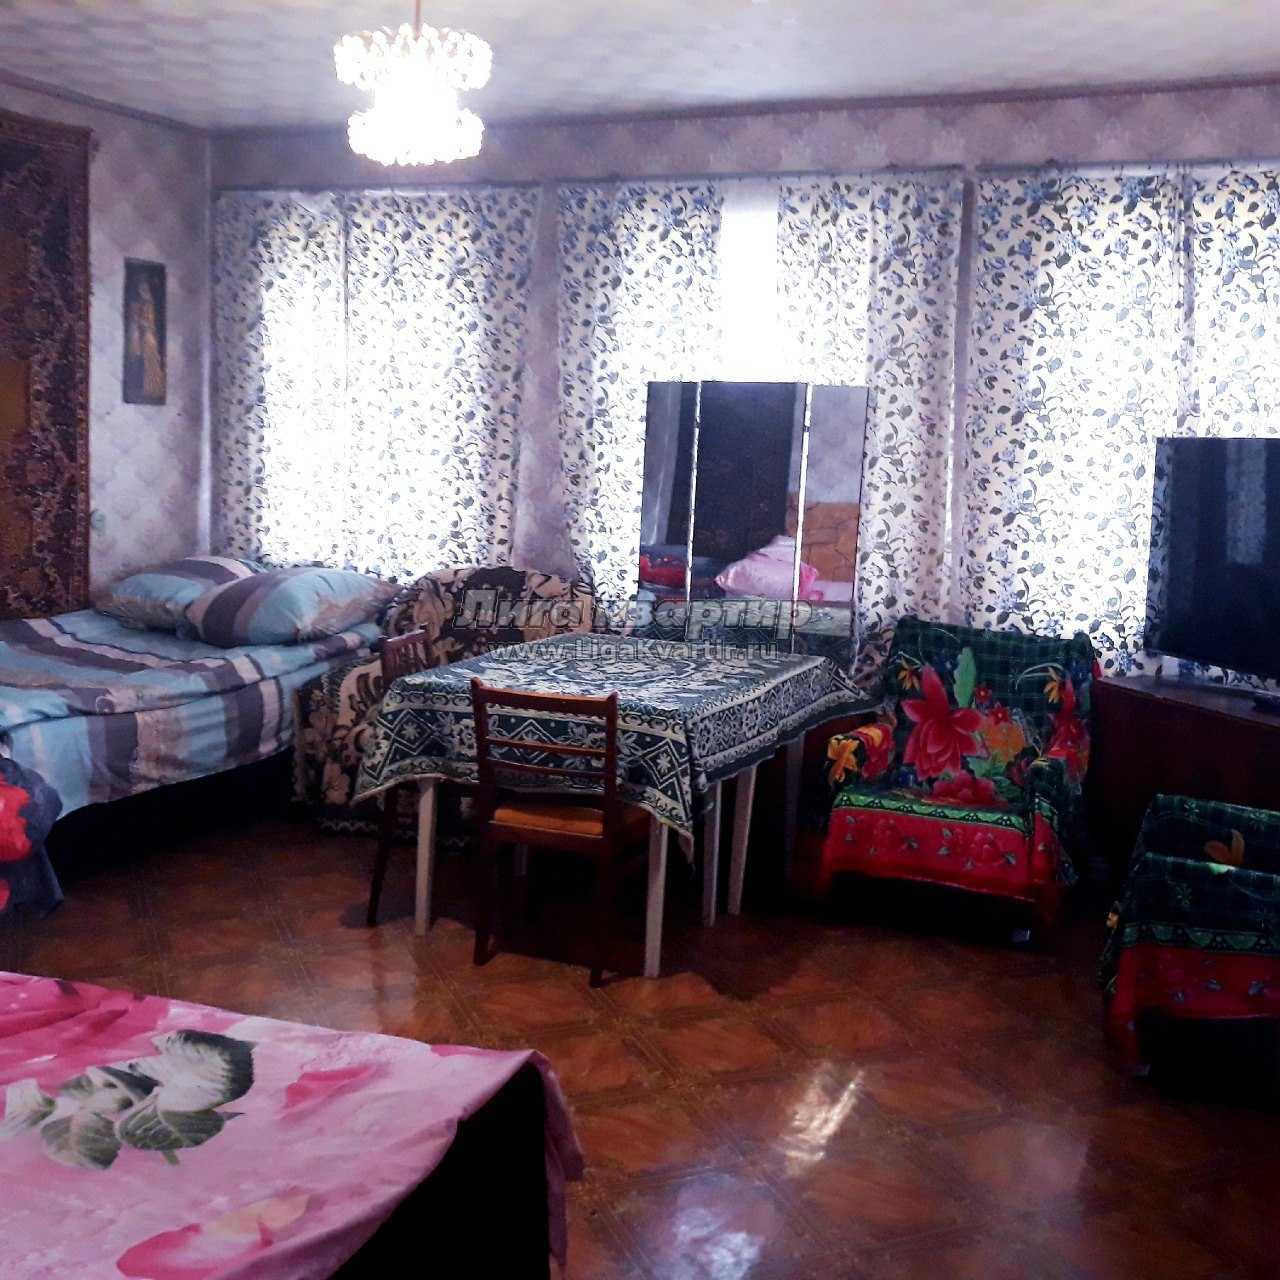 Снять квартиру в луганске без мебели